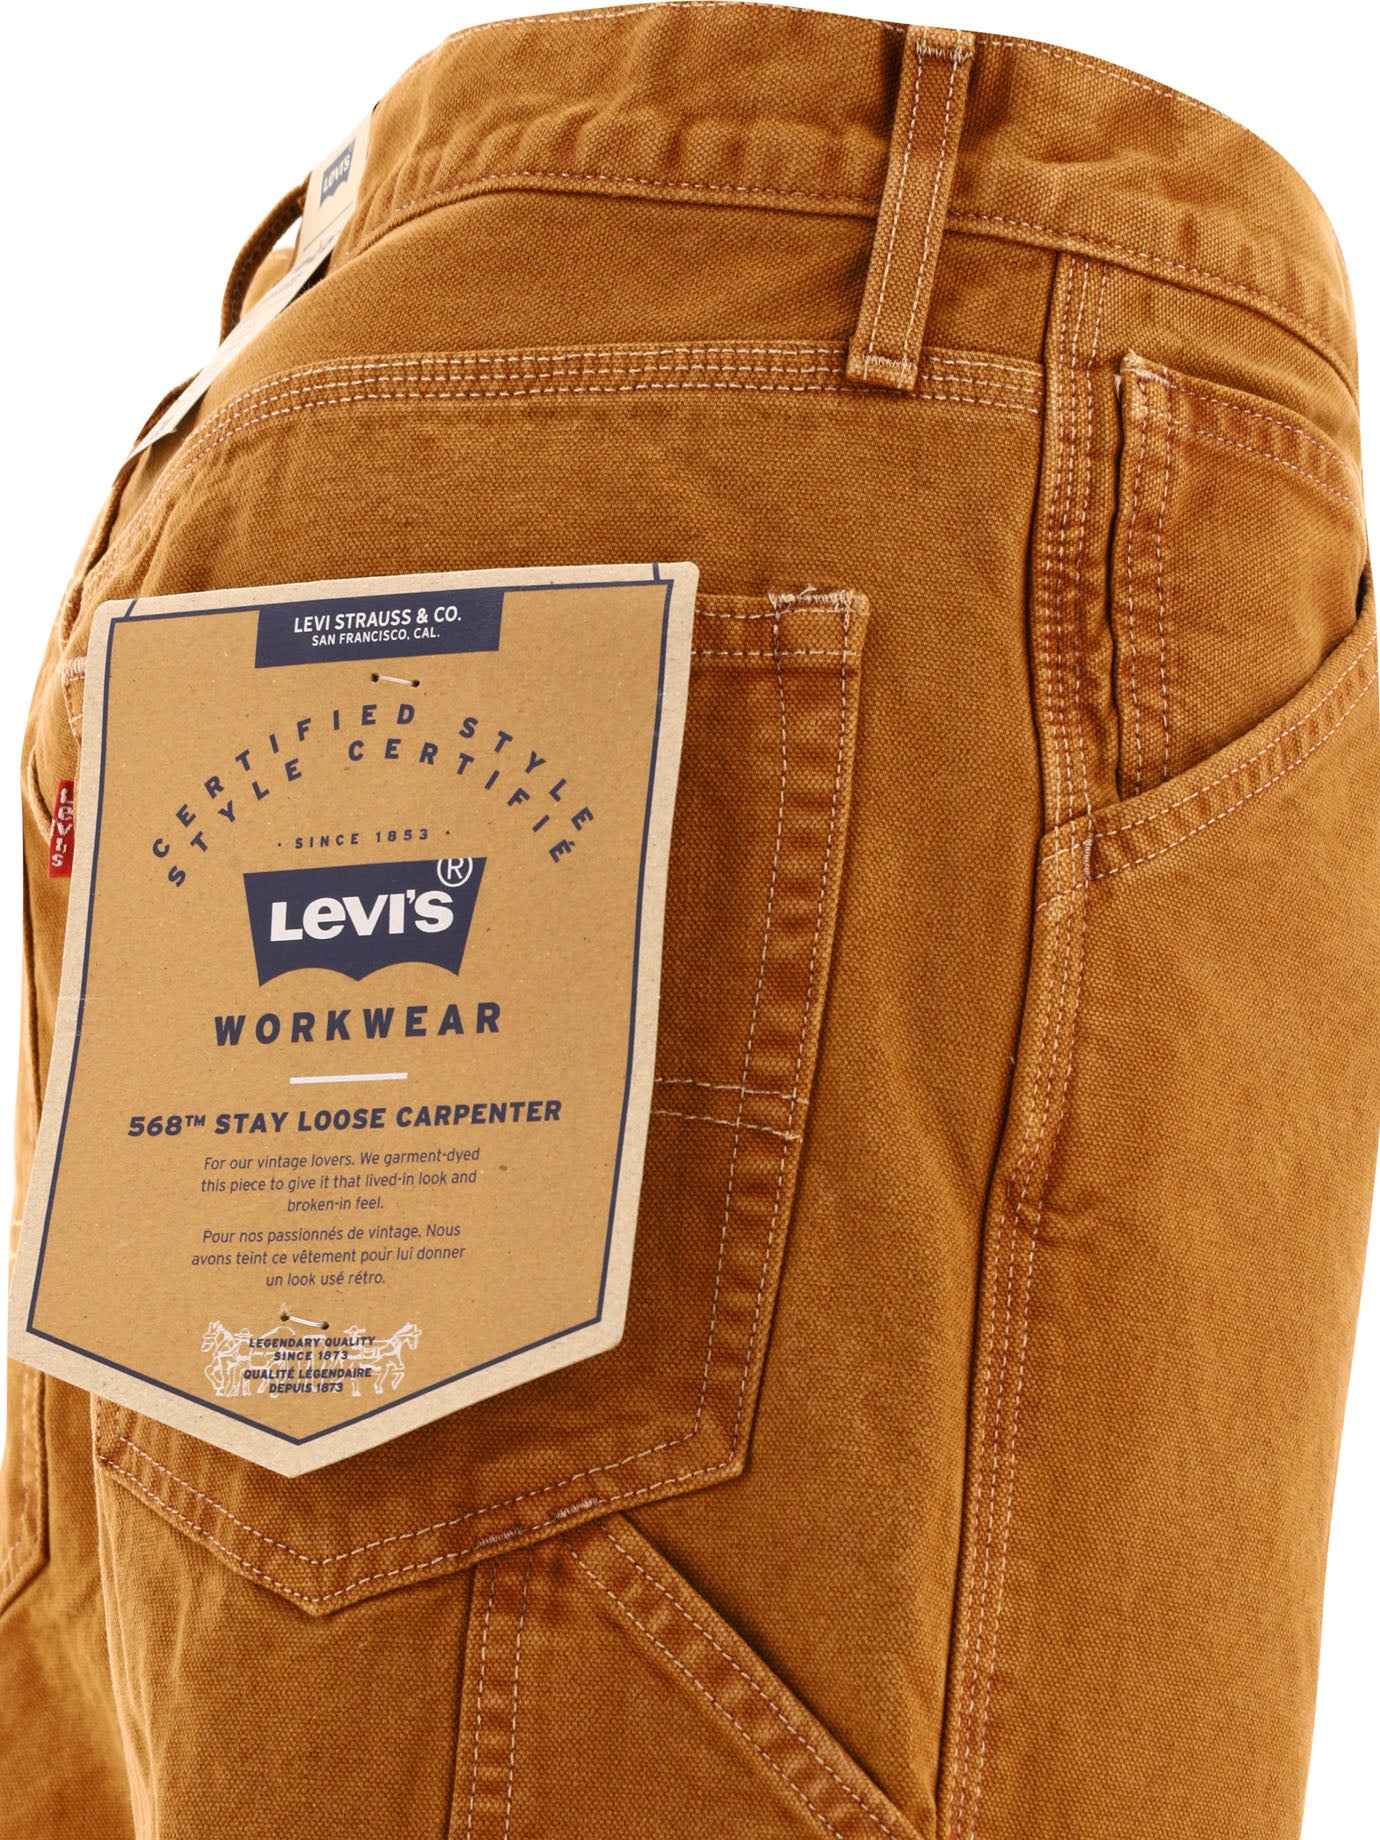 Levi's Vintage Clothing 568 Carpenter Jeans